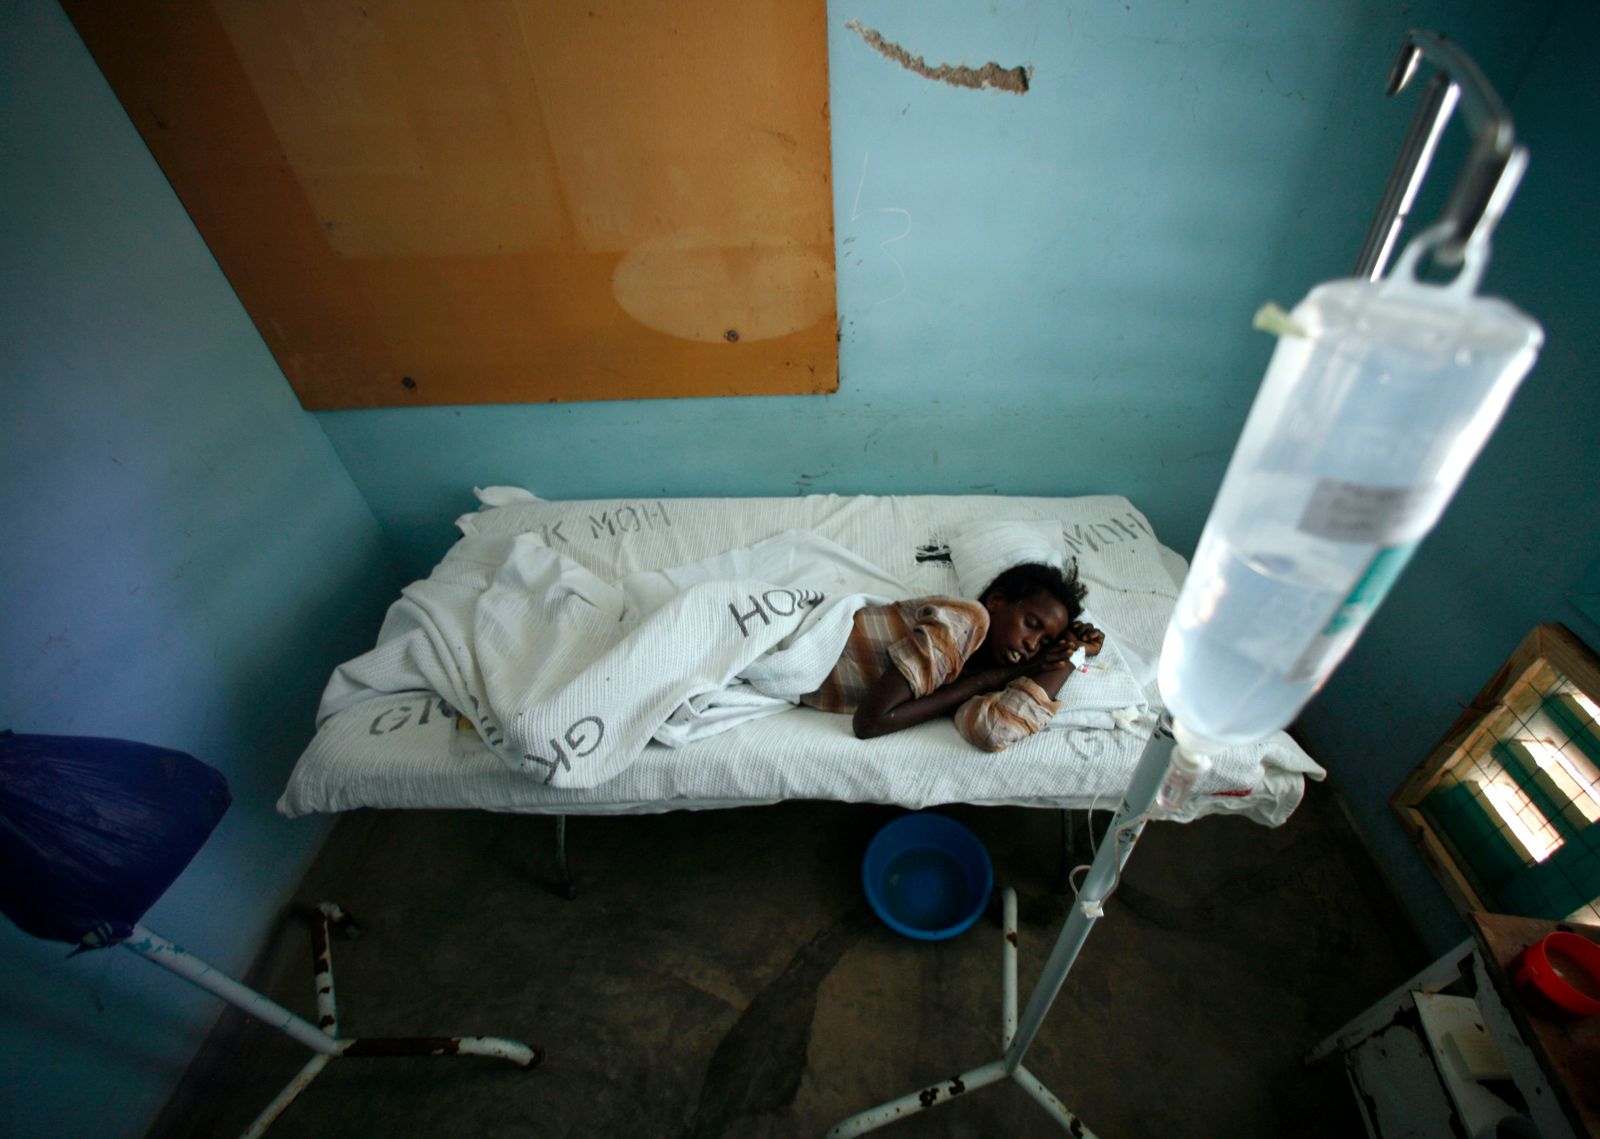 إحدى المصابات بحمى الوادي في مستشفى جاريسا شمال شرقي نيروبي خلال تفشي المرض في كينيا عام 2007 - REUTERS